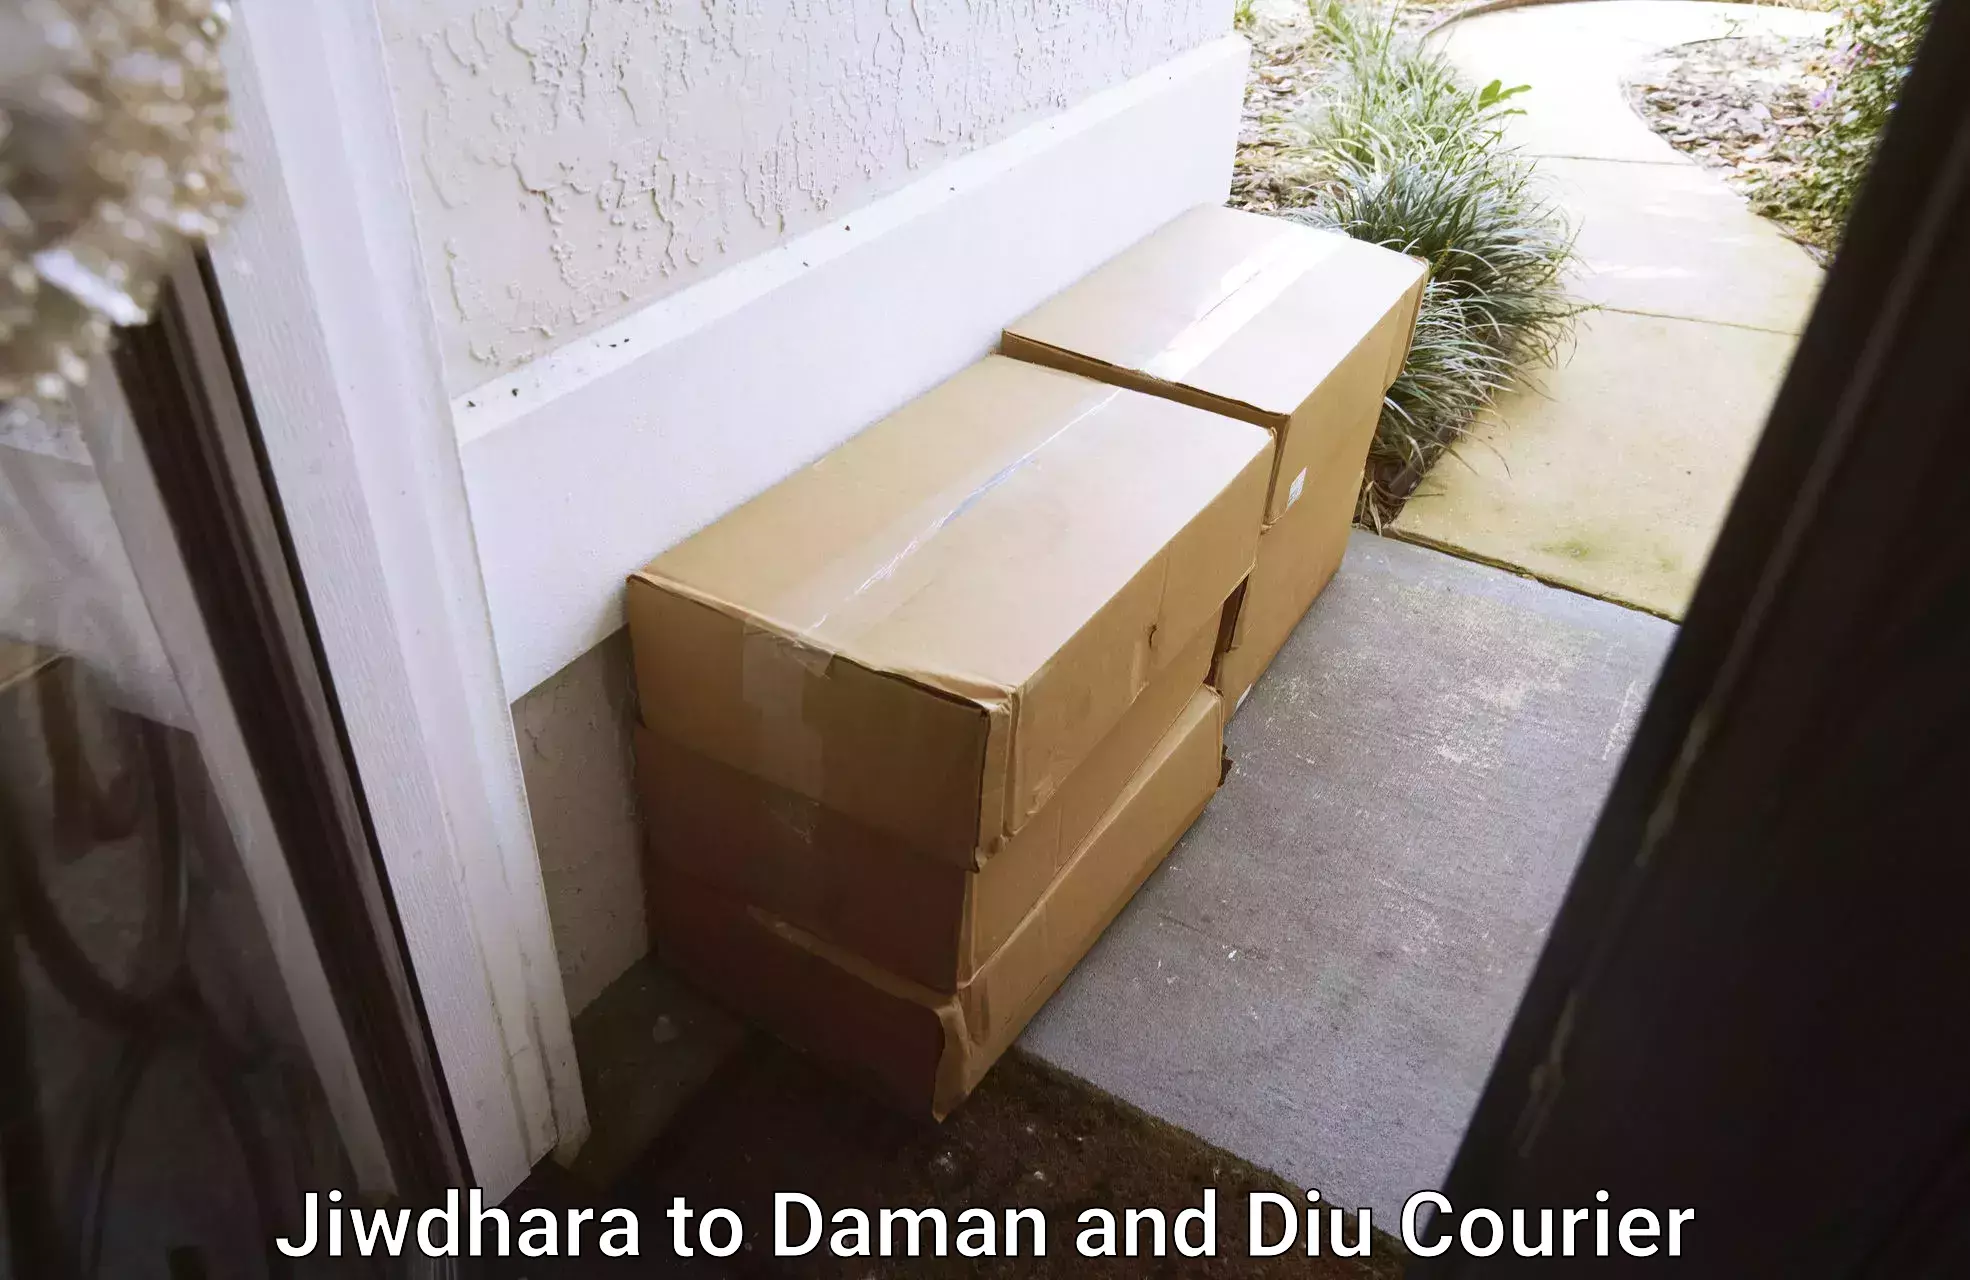 Trusted furniture movers Jiwdhara to Daman and Diu